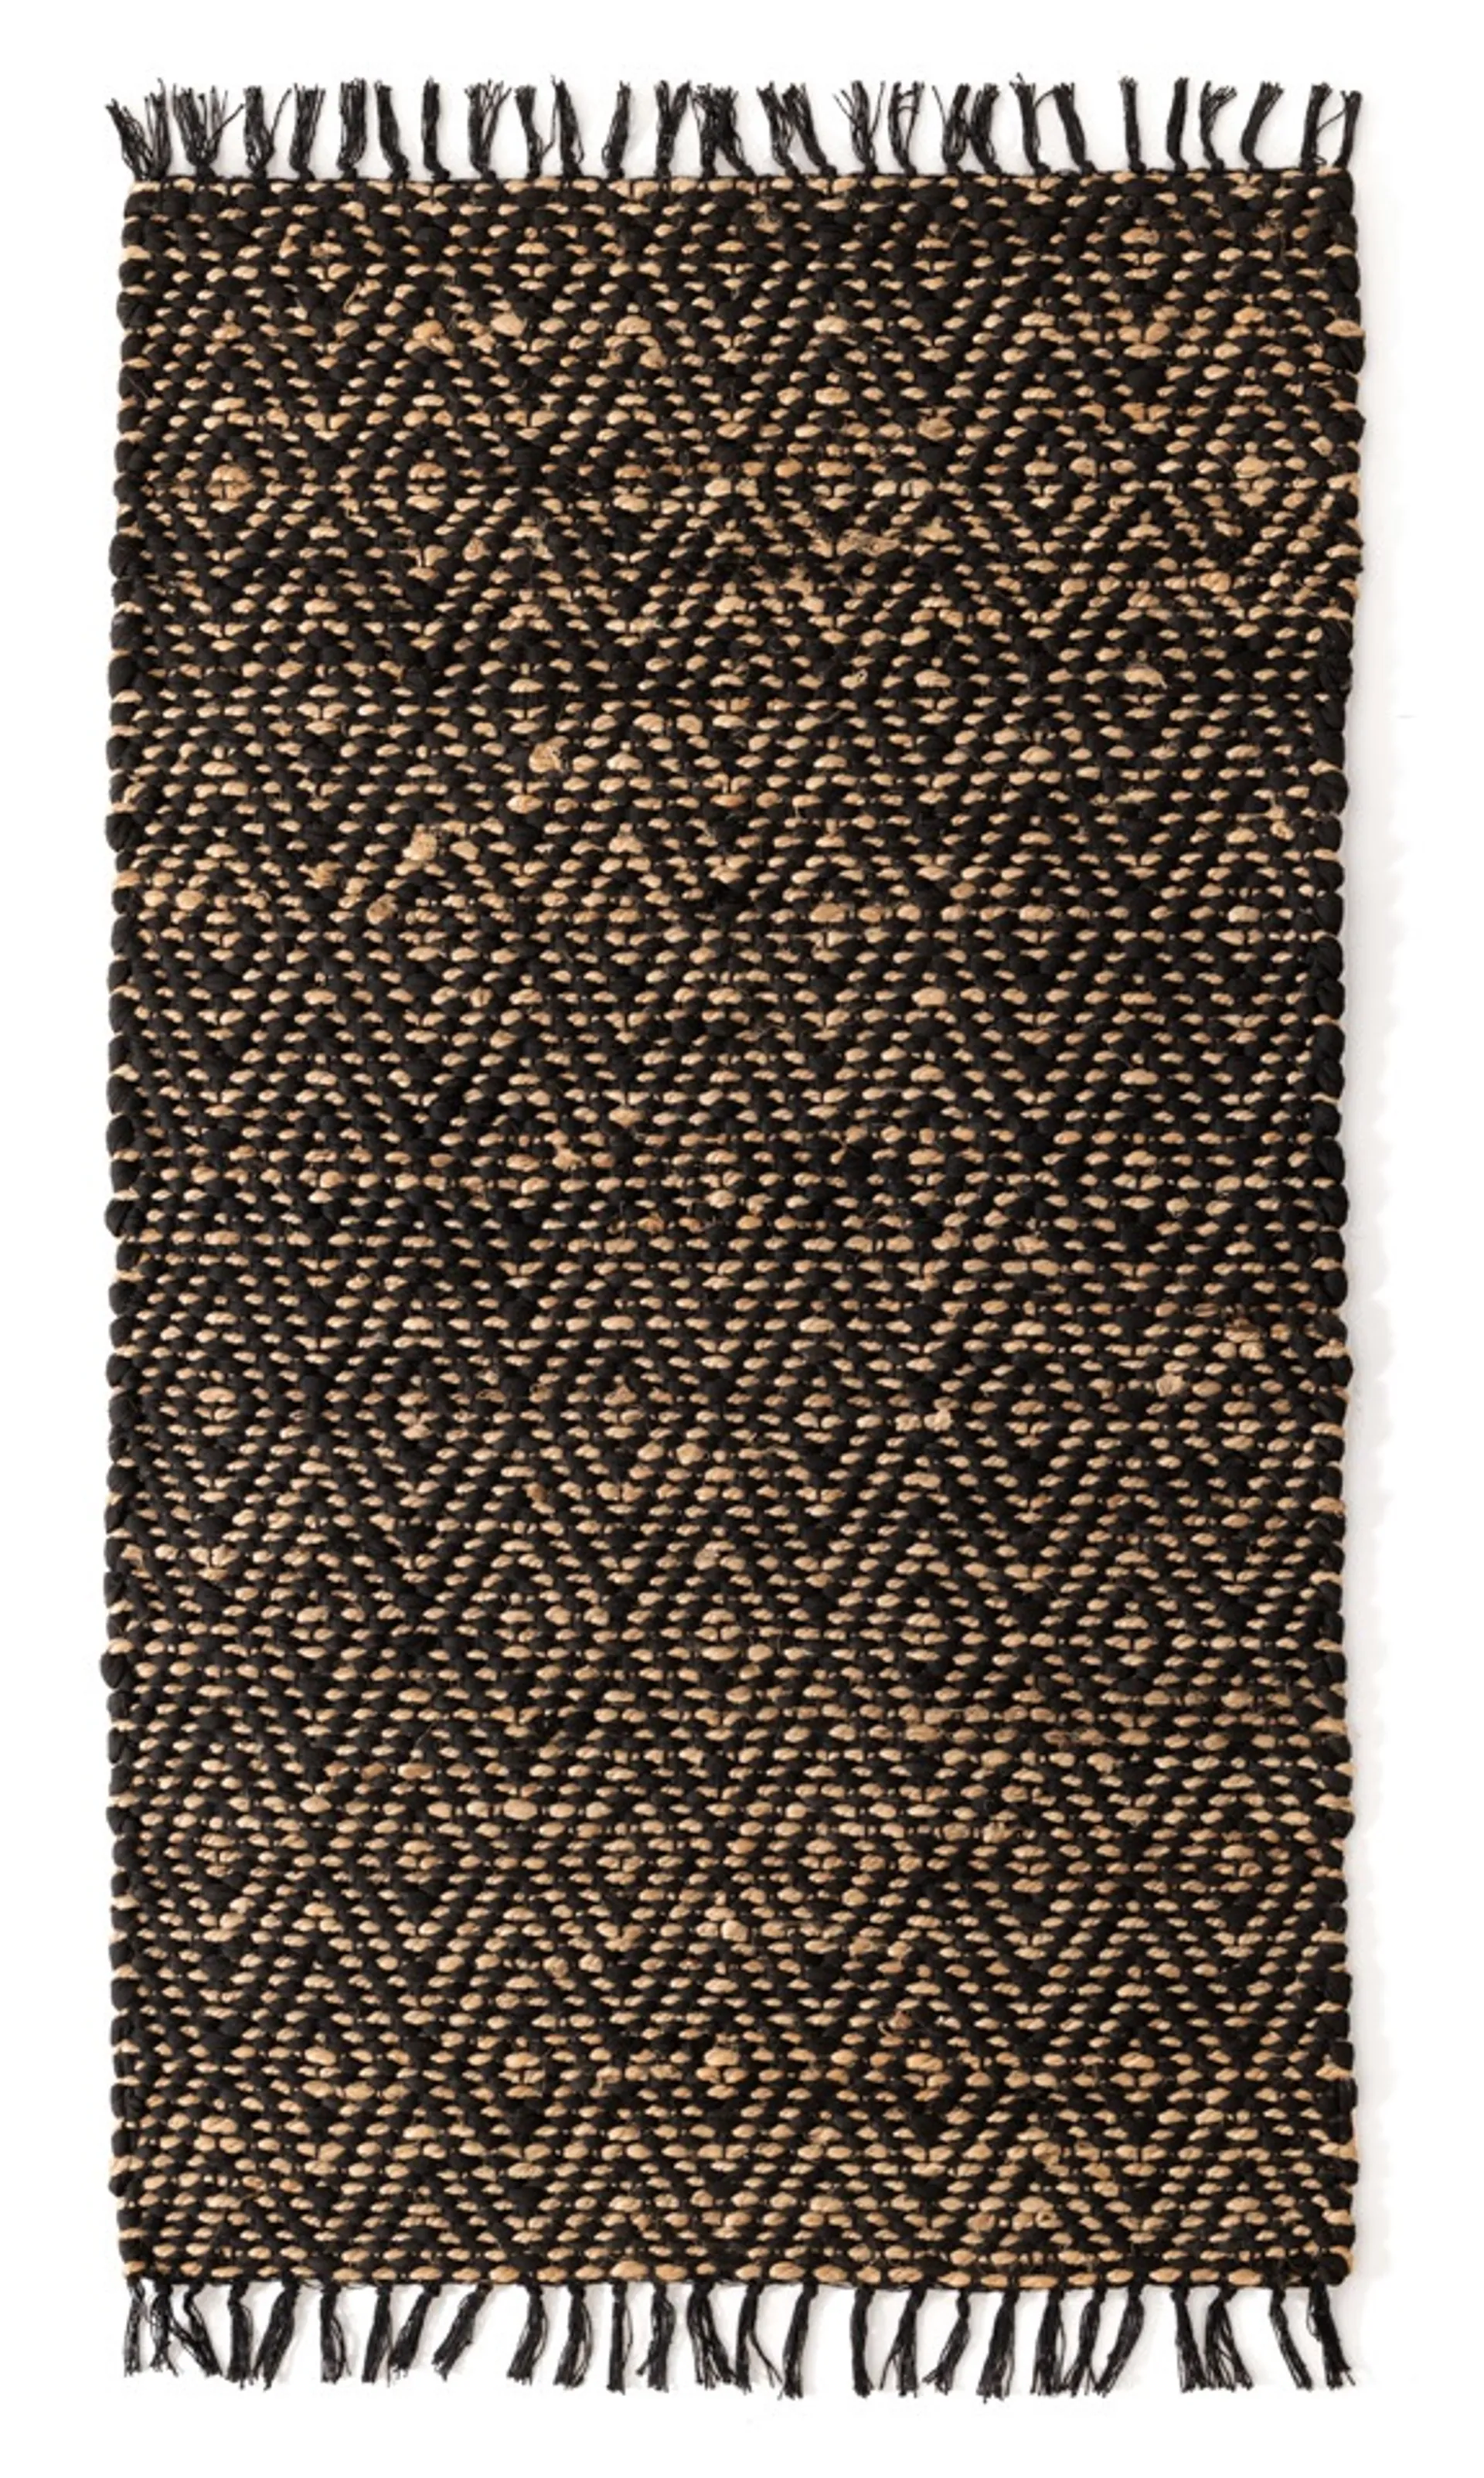 Dywanik dekoracyjny Jute 80x130 cm czarny/beżowy